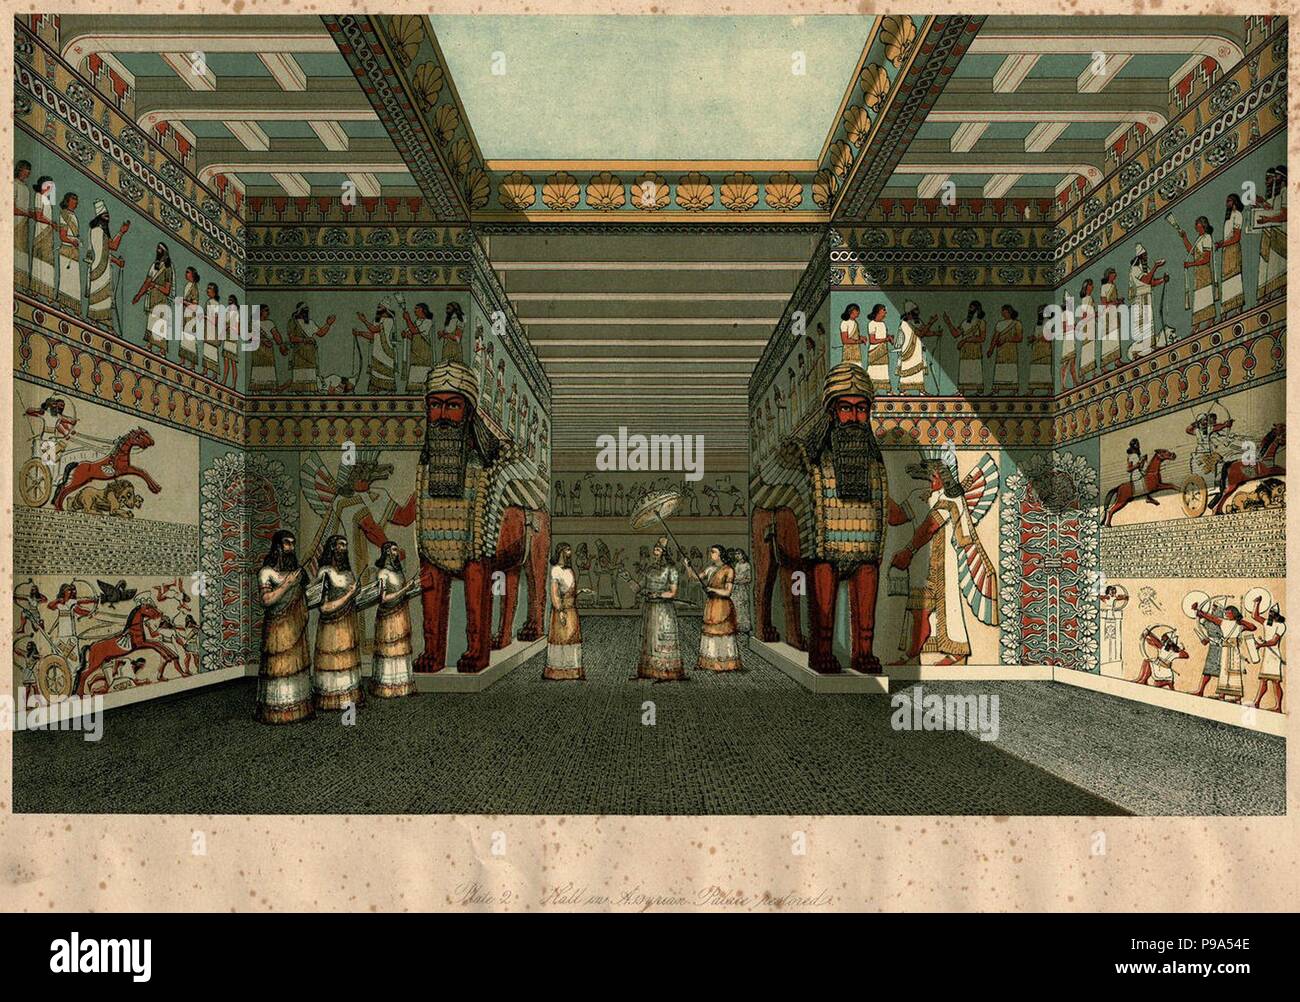 Die Halle eines assyrischen Palast restauriert (Aus 'Ninive Gericht in der Crystal Palace' von Austen Henry Layard). Museum: private Sammlung. Stockfoto